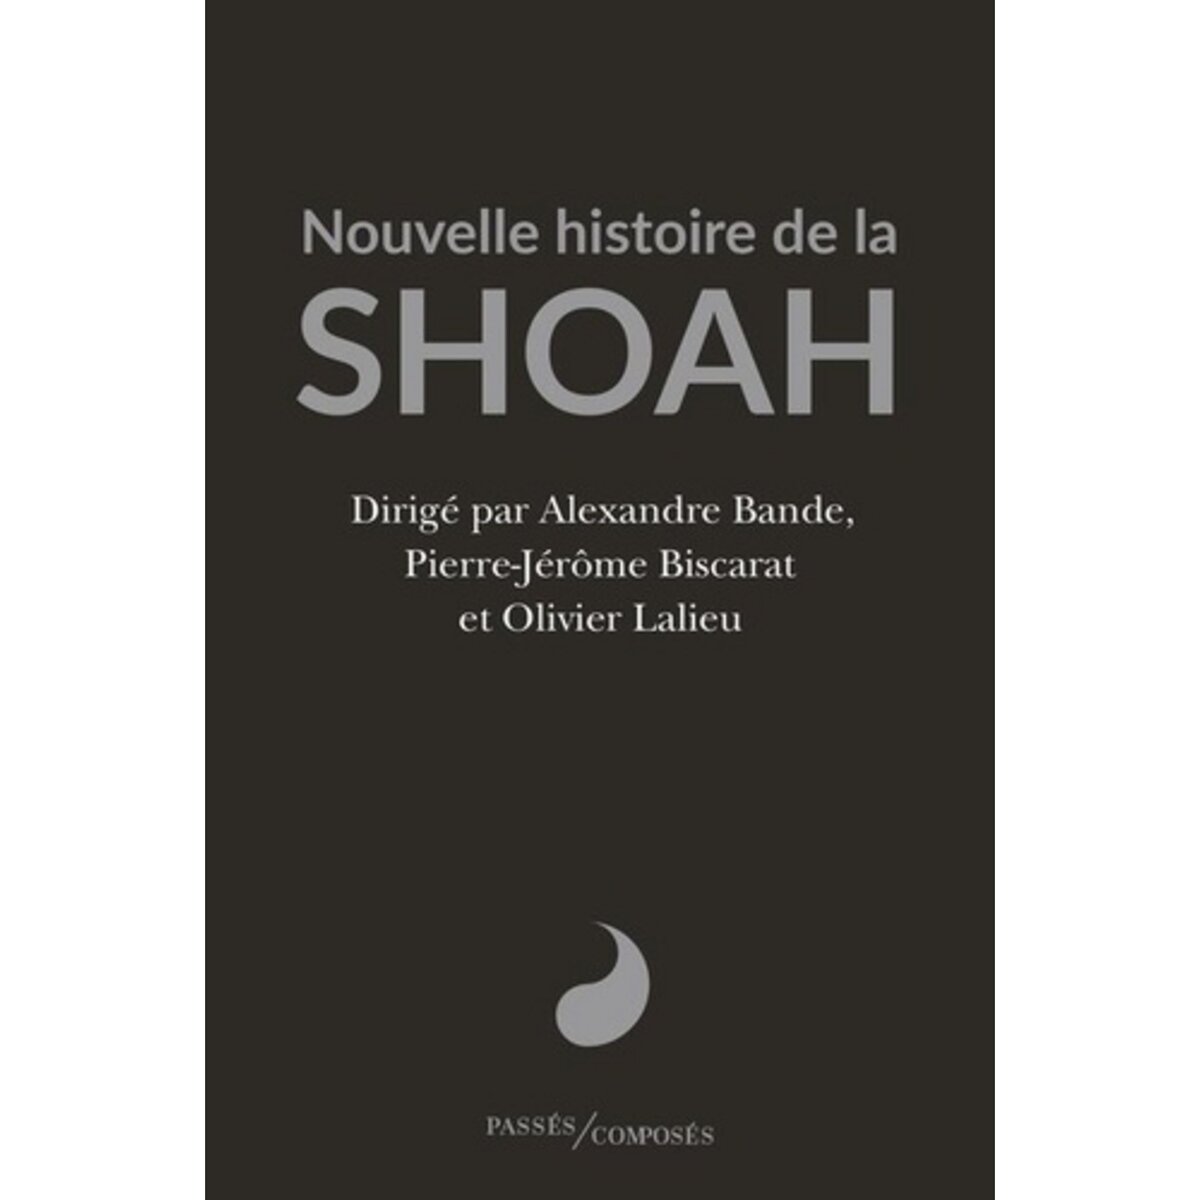  NOUVELLE HISTOIRE DE LA SHOAH, Bande Alexandre